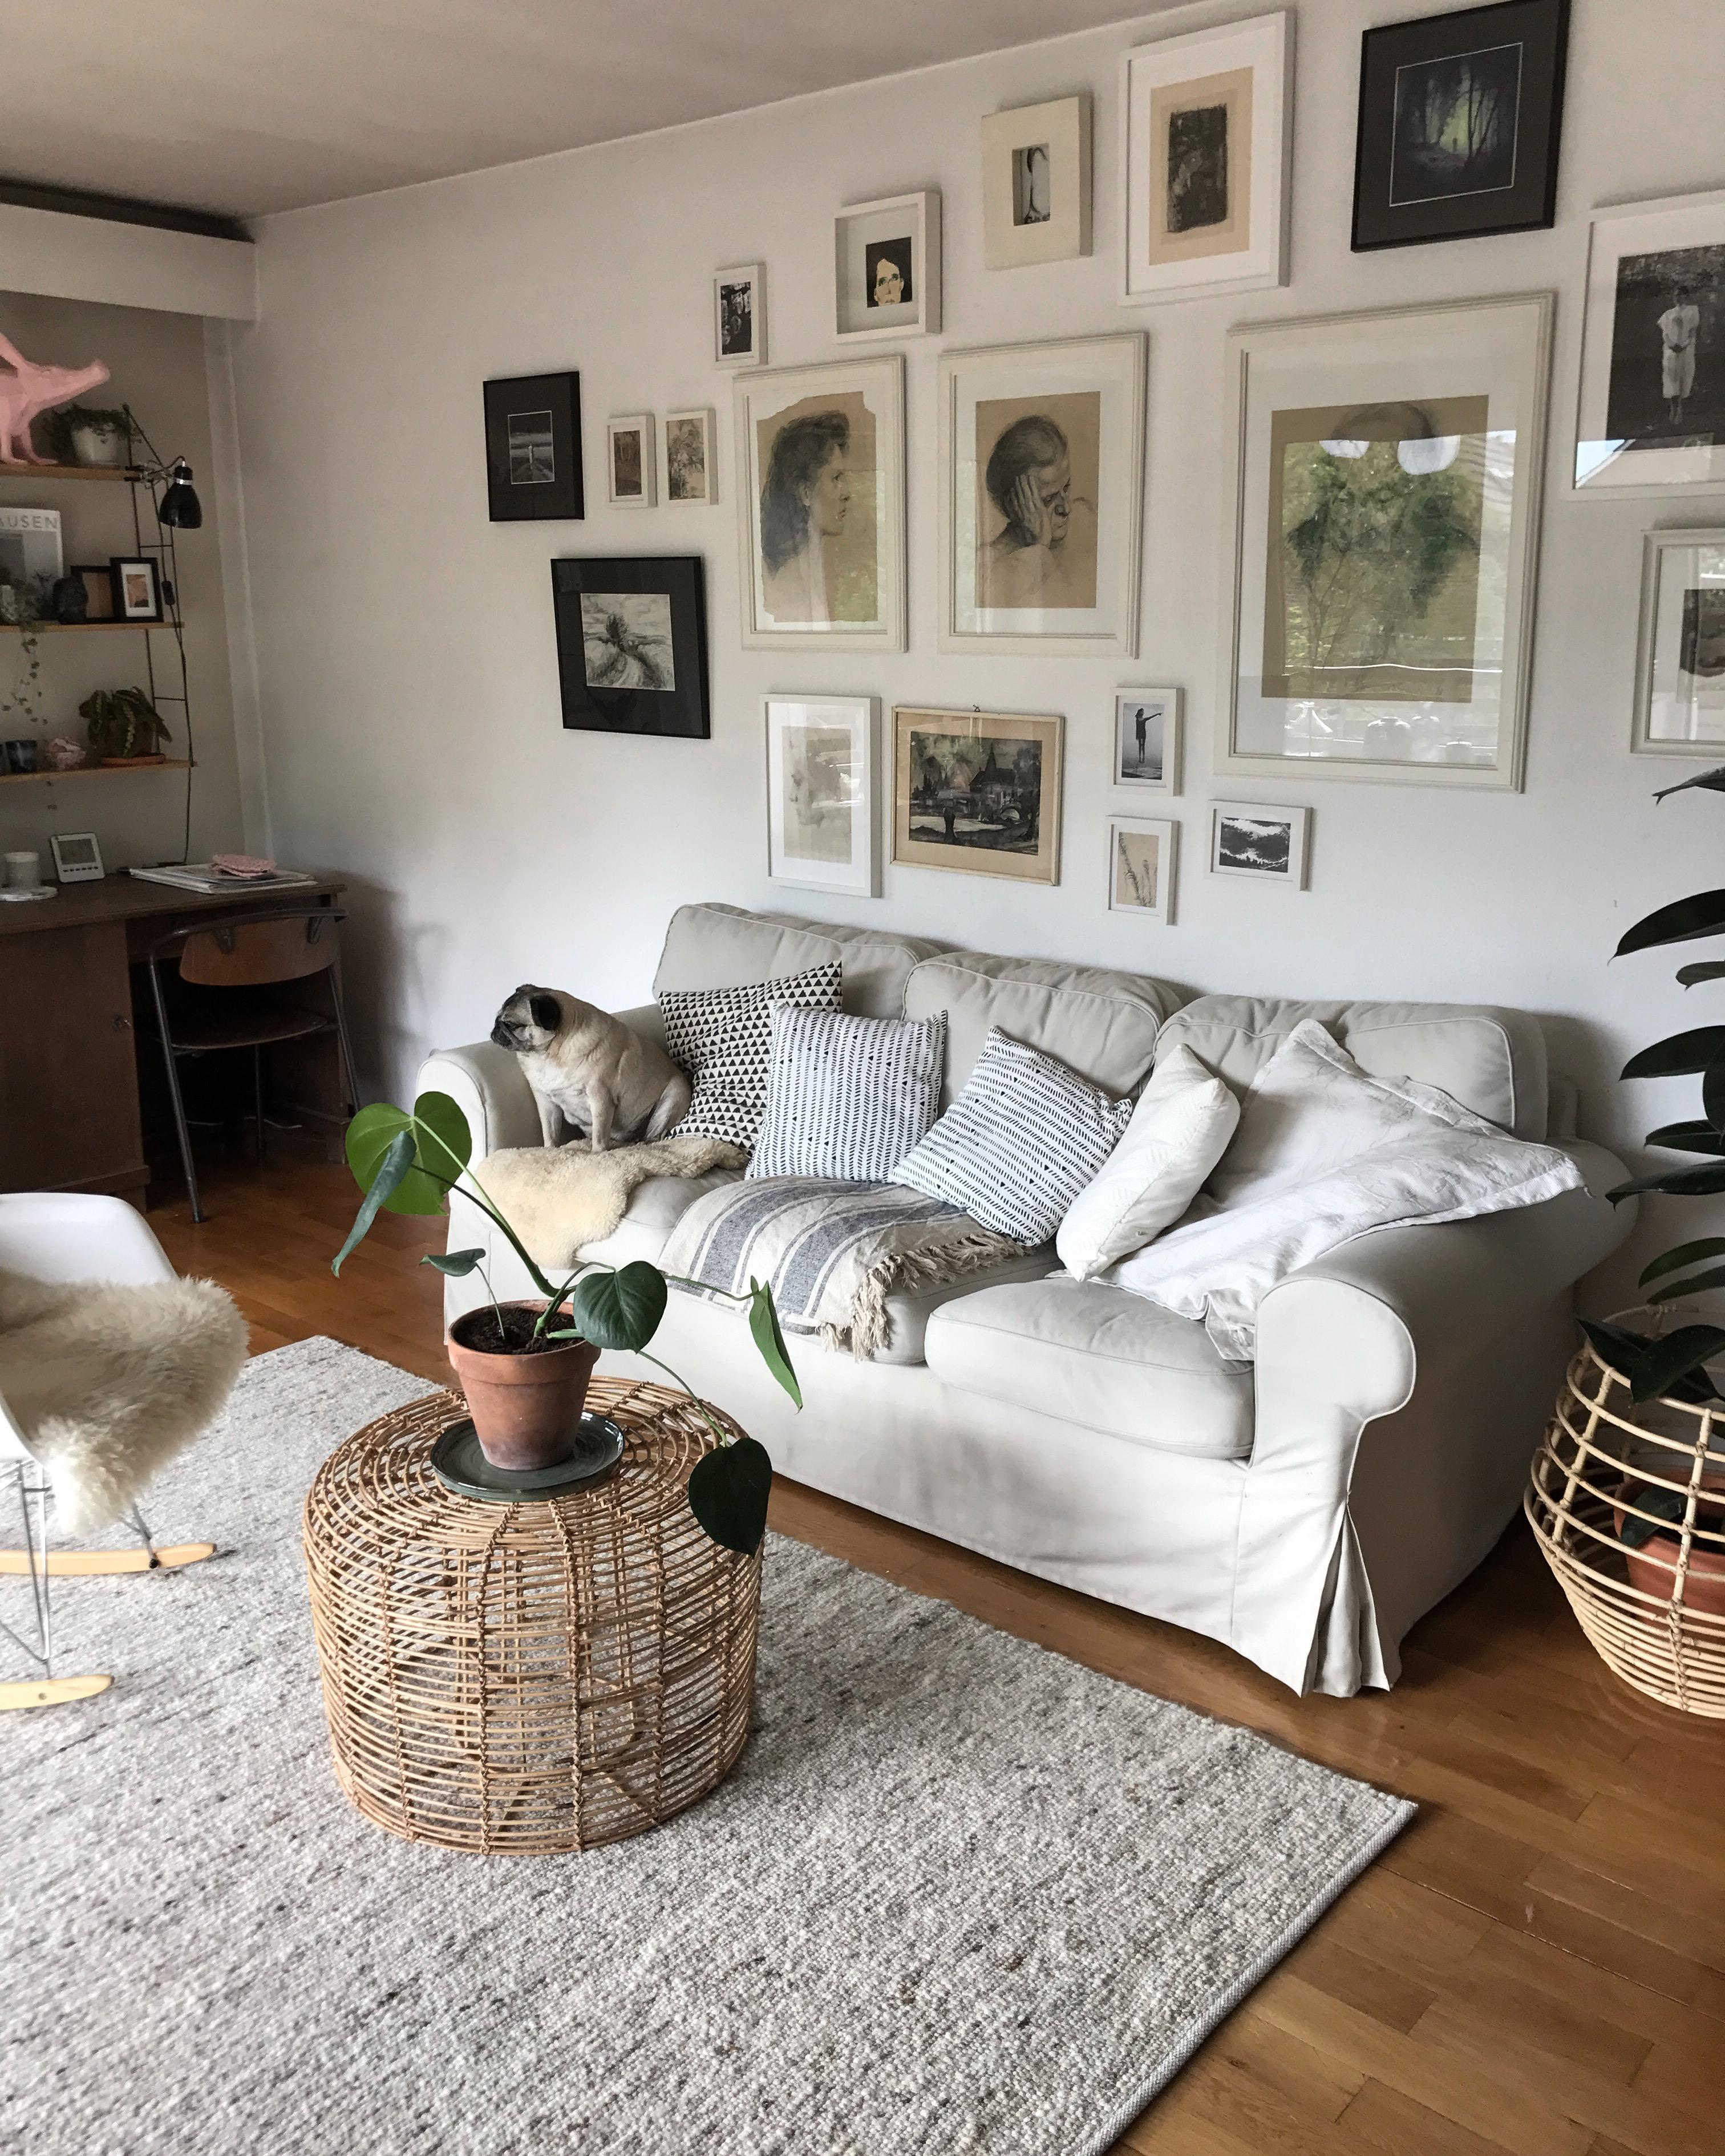 Mein Sofa teile ich mir mit meiner Mopsdame. 
#lebenmithund
#mops
#interior
#wohnzimmer